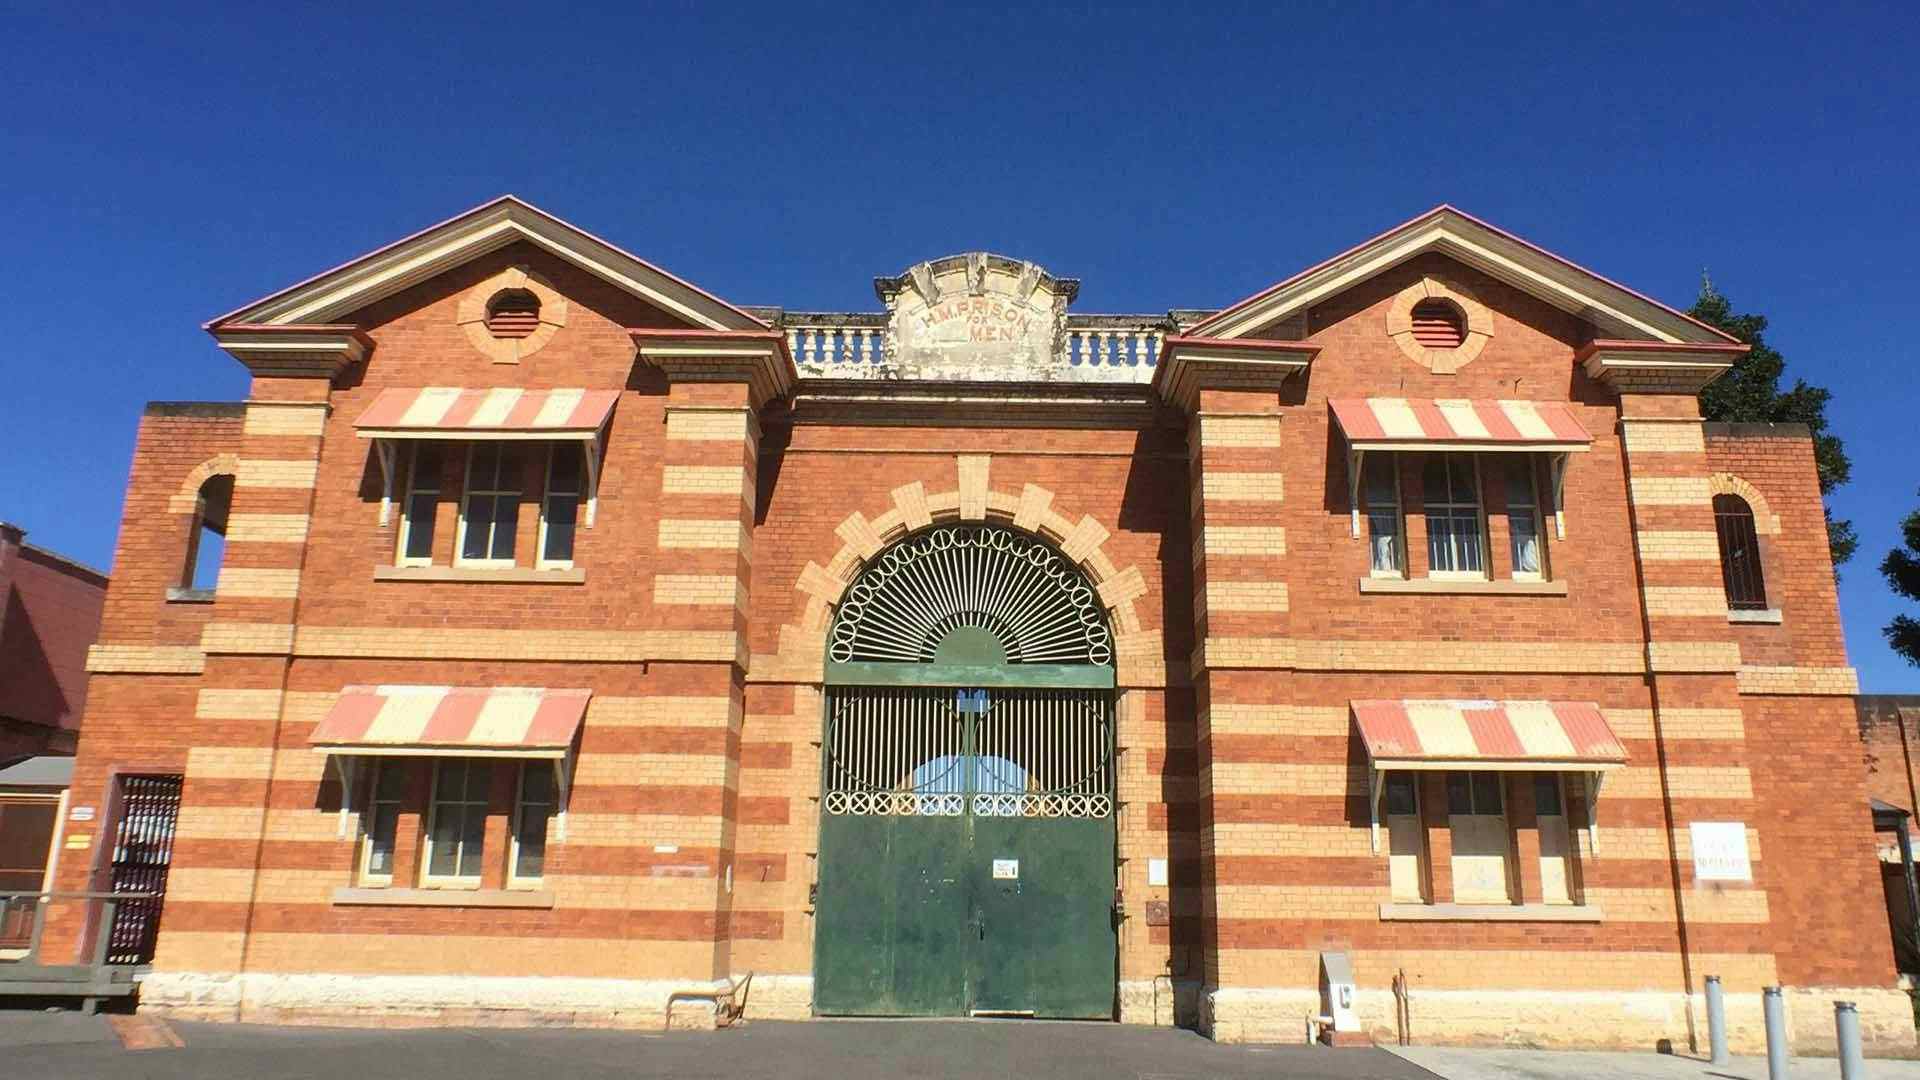 The Gatehouse, Boggo Road Gaol (Jail)